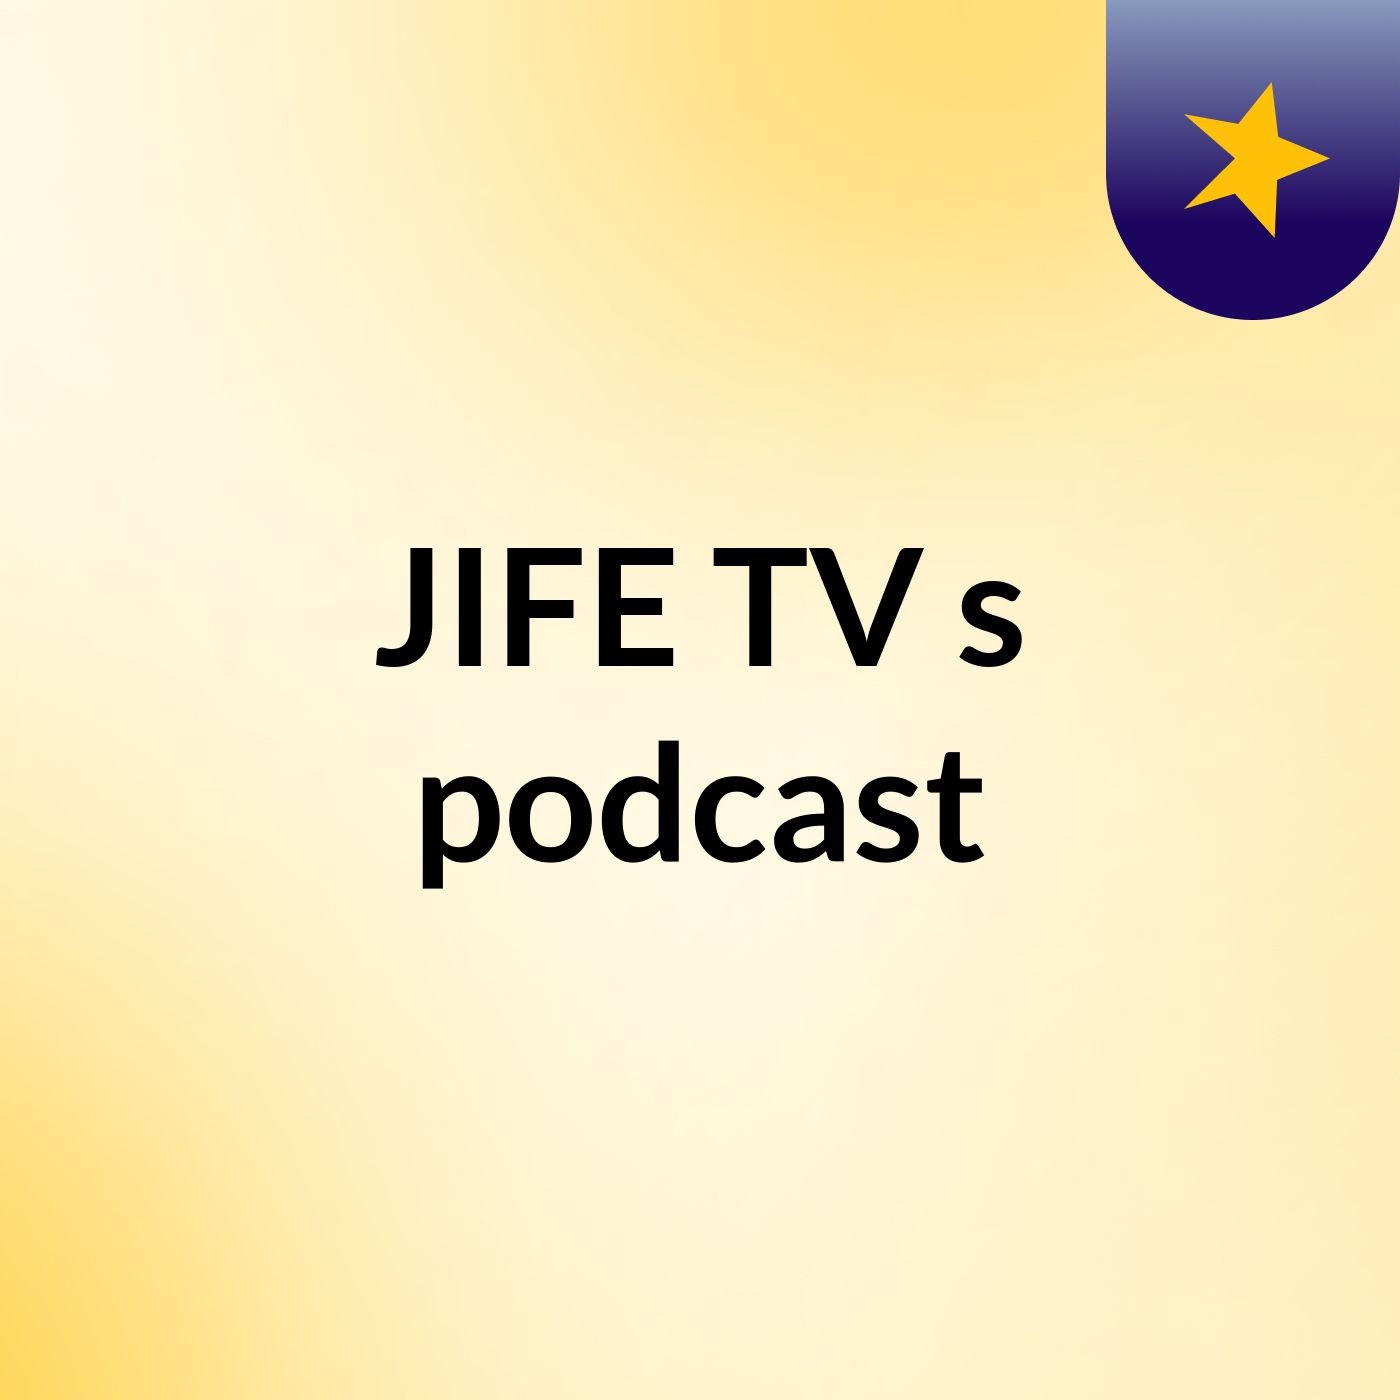 JIFE TV's podcast